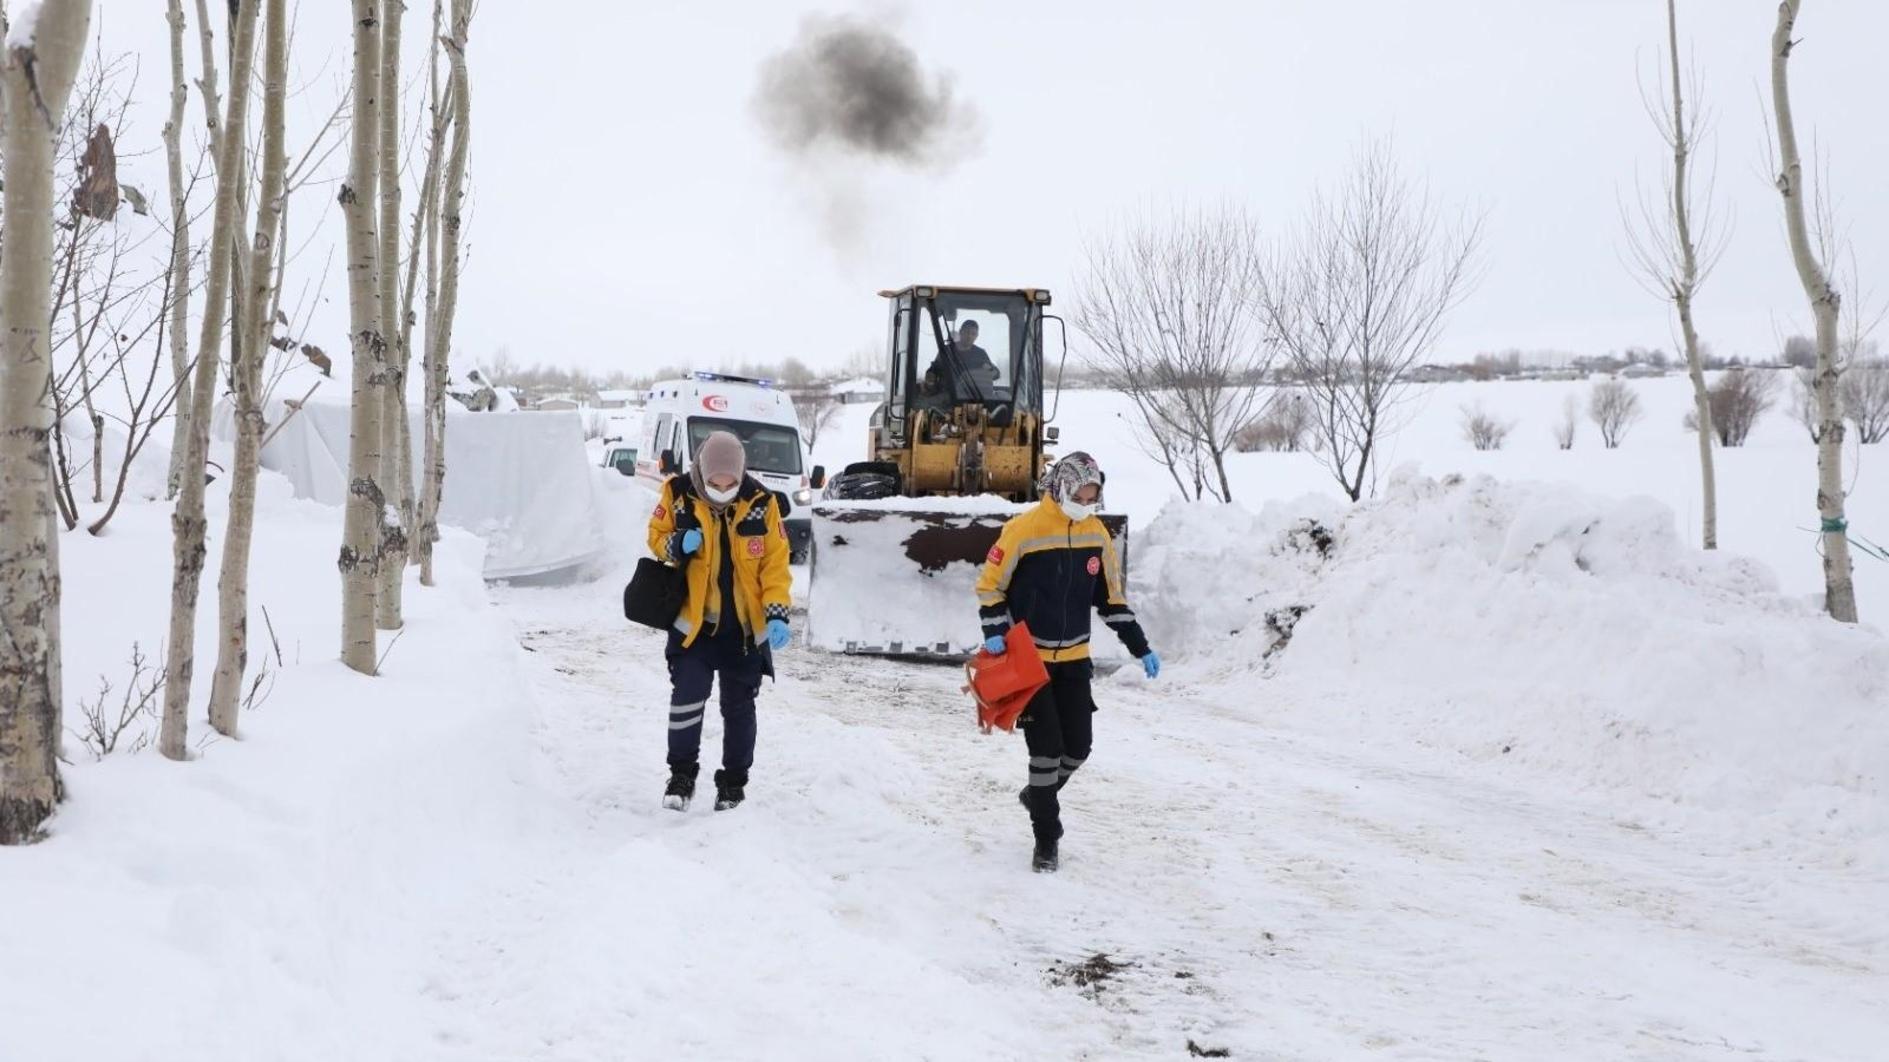 Türkiye kampt met hevige sneeuwval